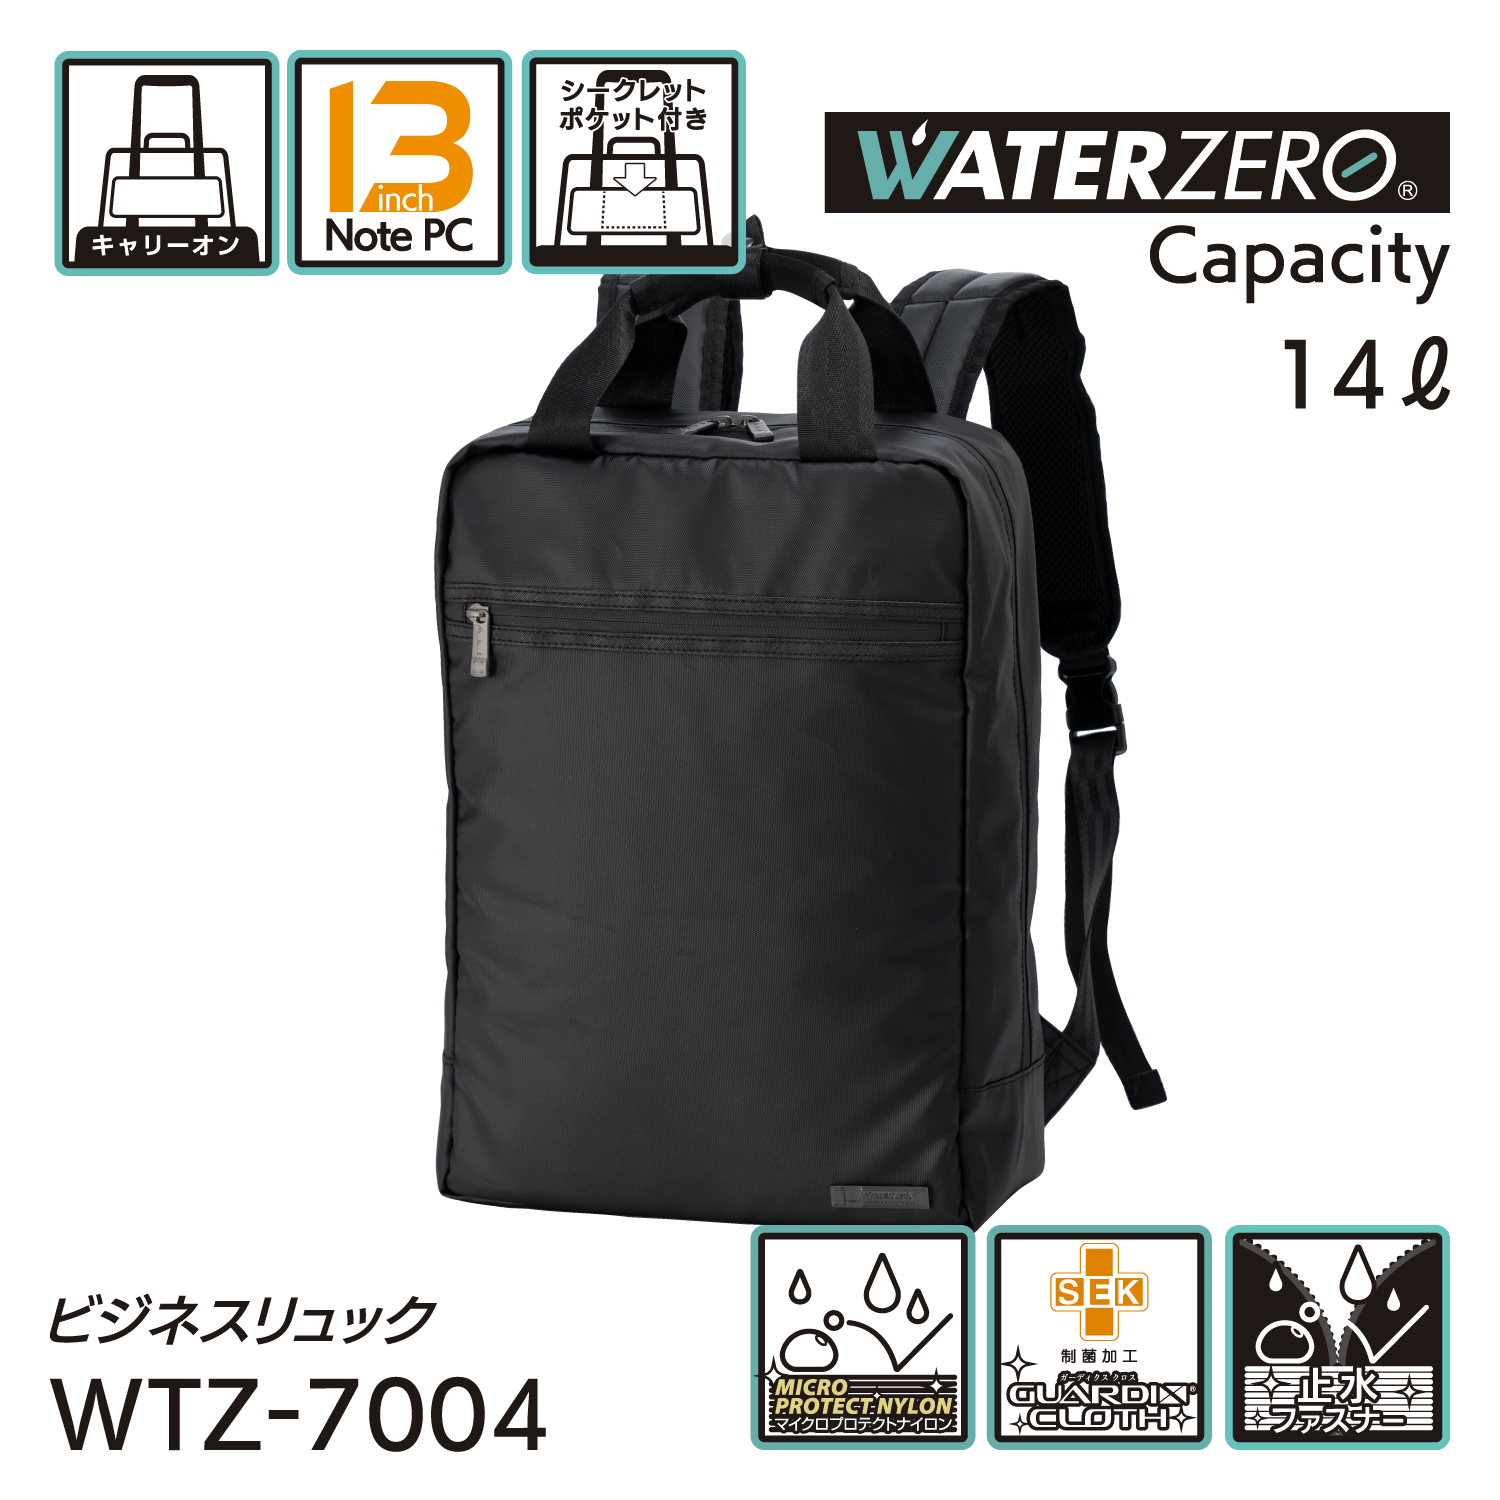 軽量・強撥水シリーズ 止水ファスナー搭載 抗菌加工 NEW WATER ZERO ビジネスリュック 14L WTZ-7004